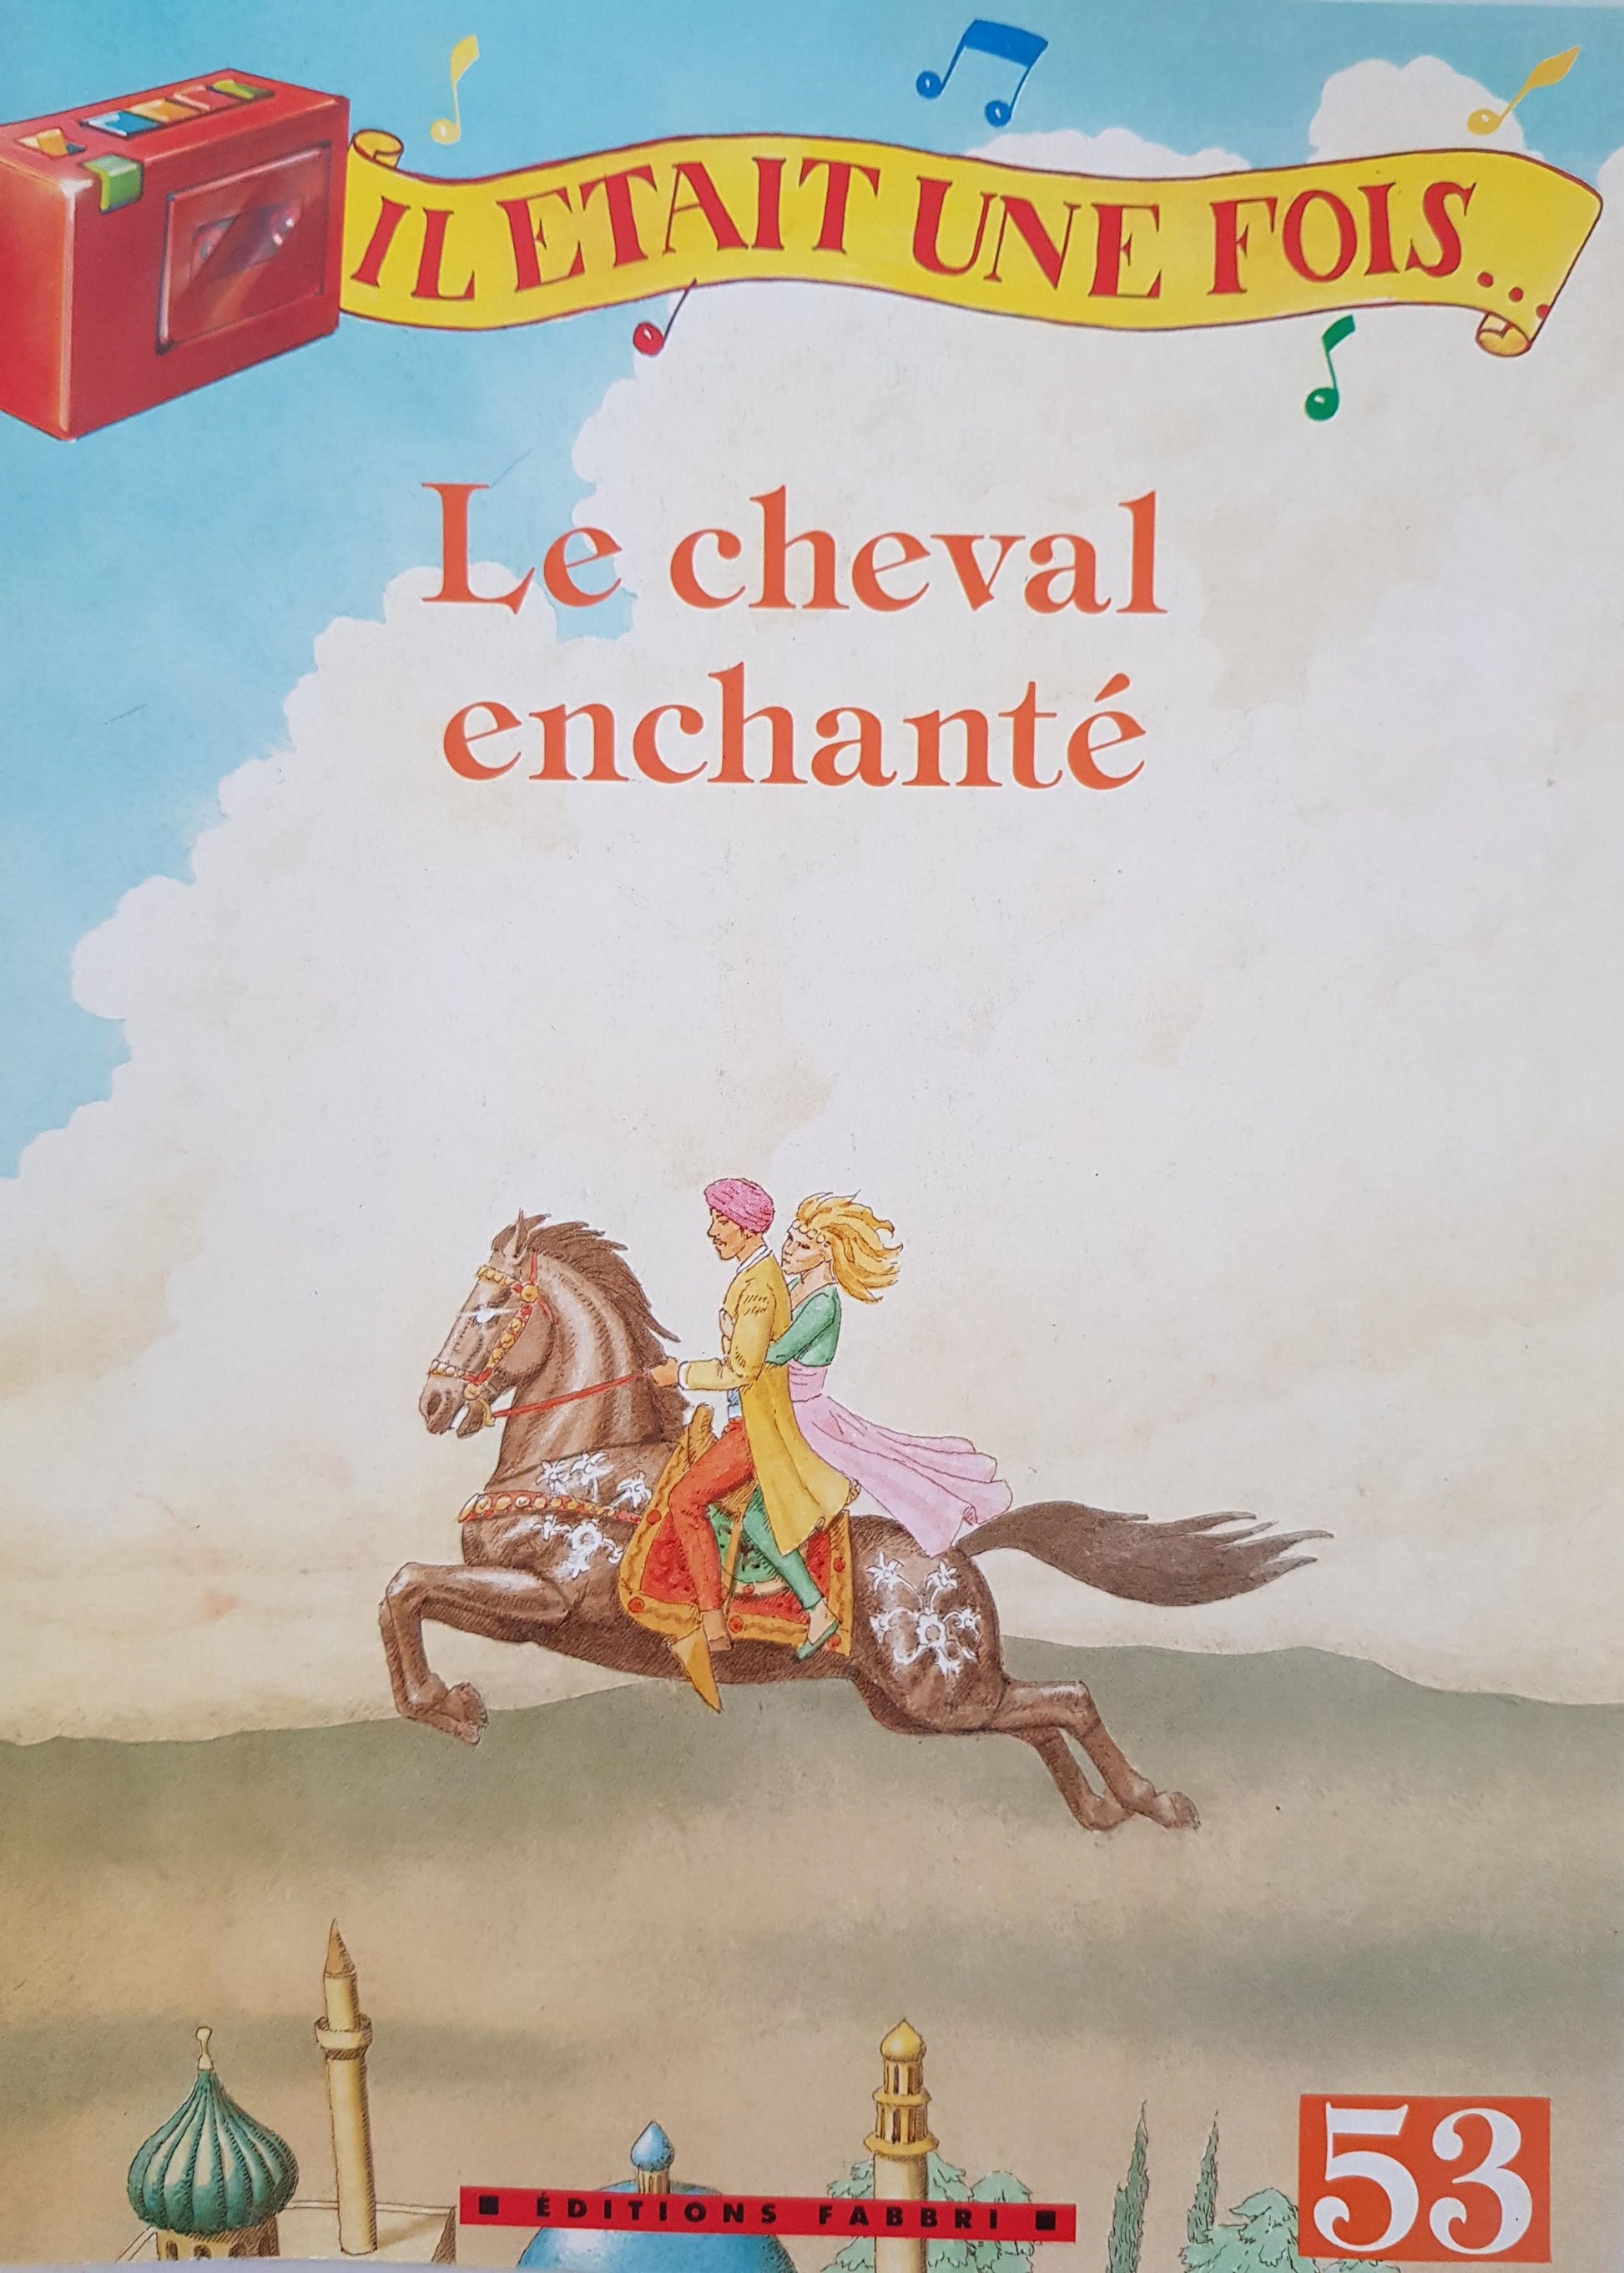 3 Livres: Le cheval enchanté, Le vieux Sultan, Ali Baba et les quarante Voleurs Well Read Not Applicable  (4598533718071)